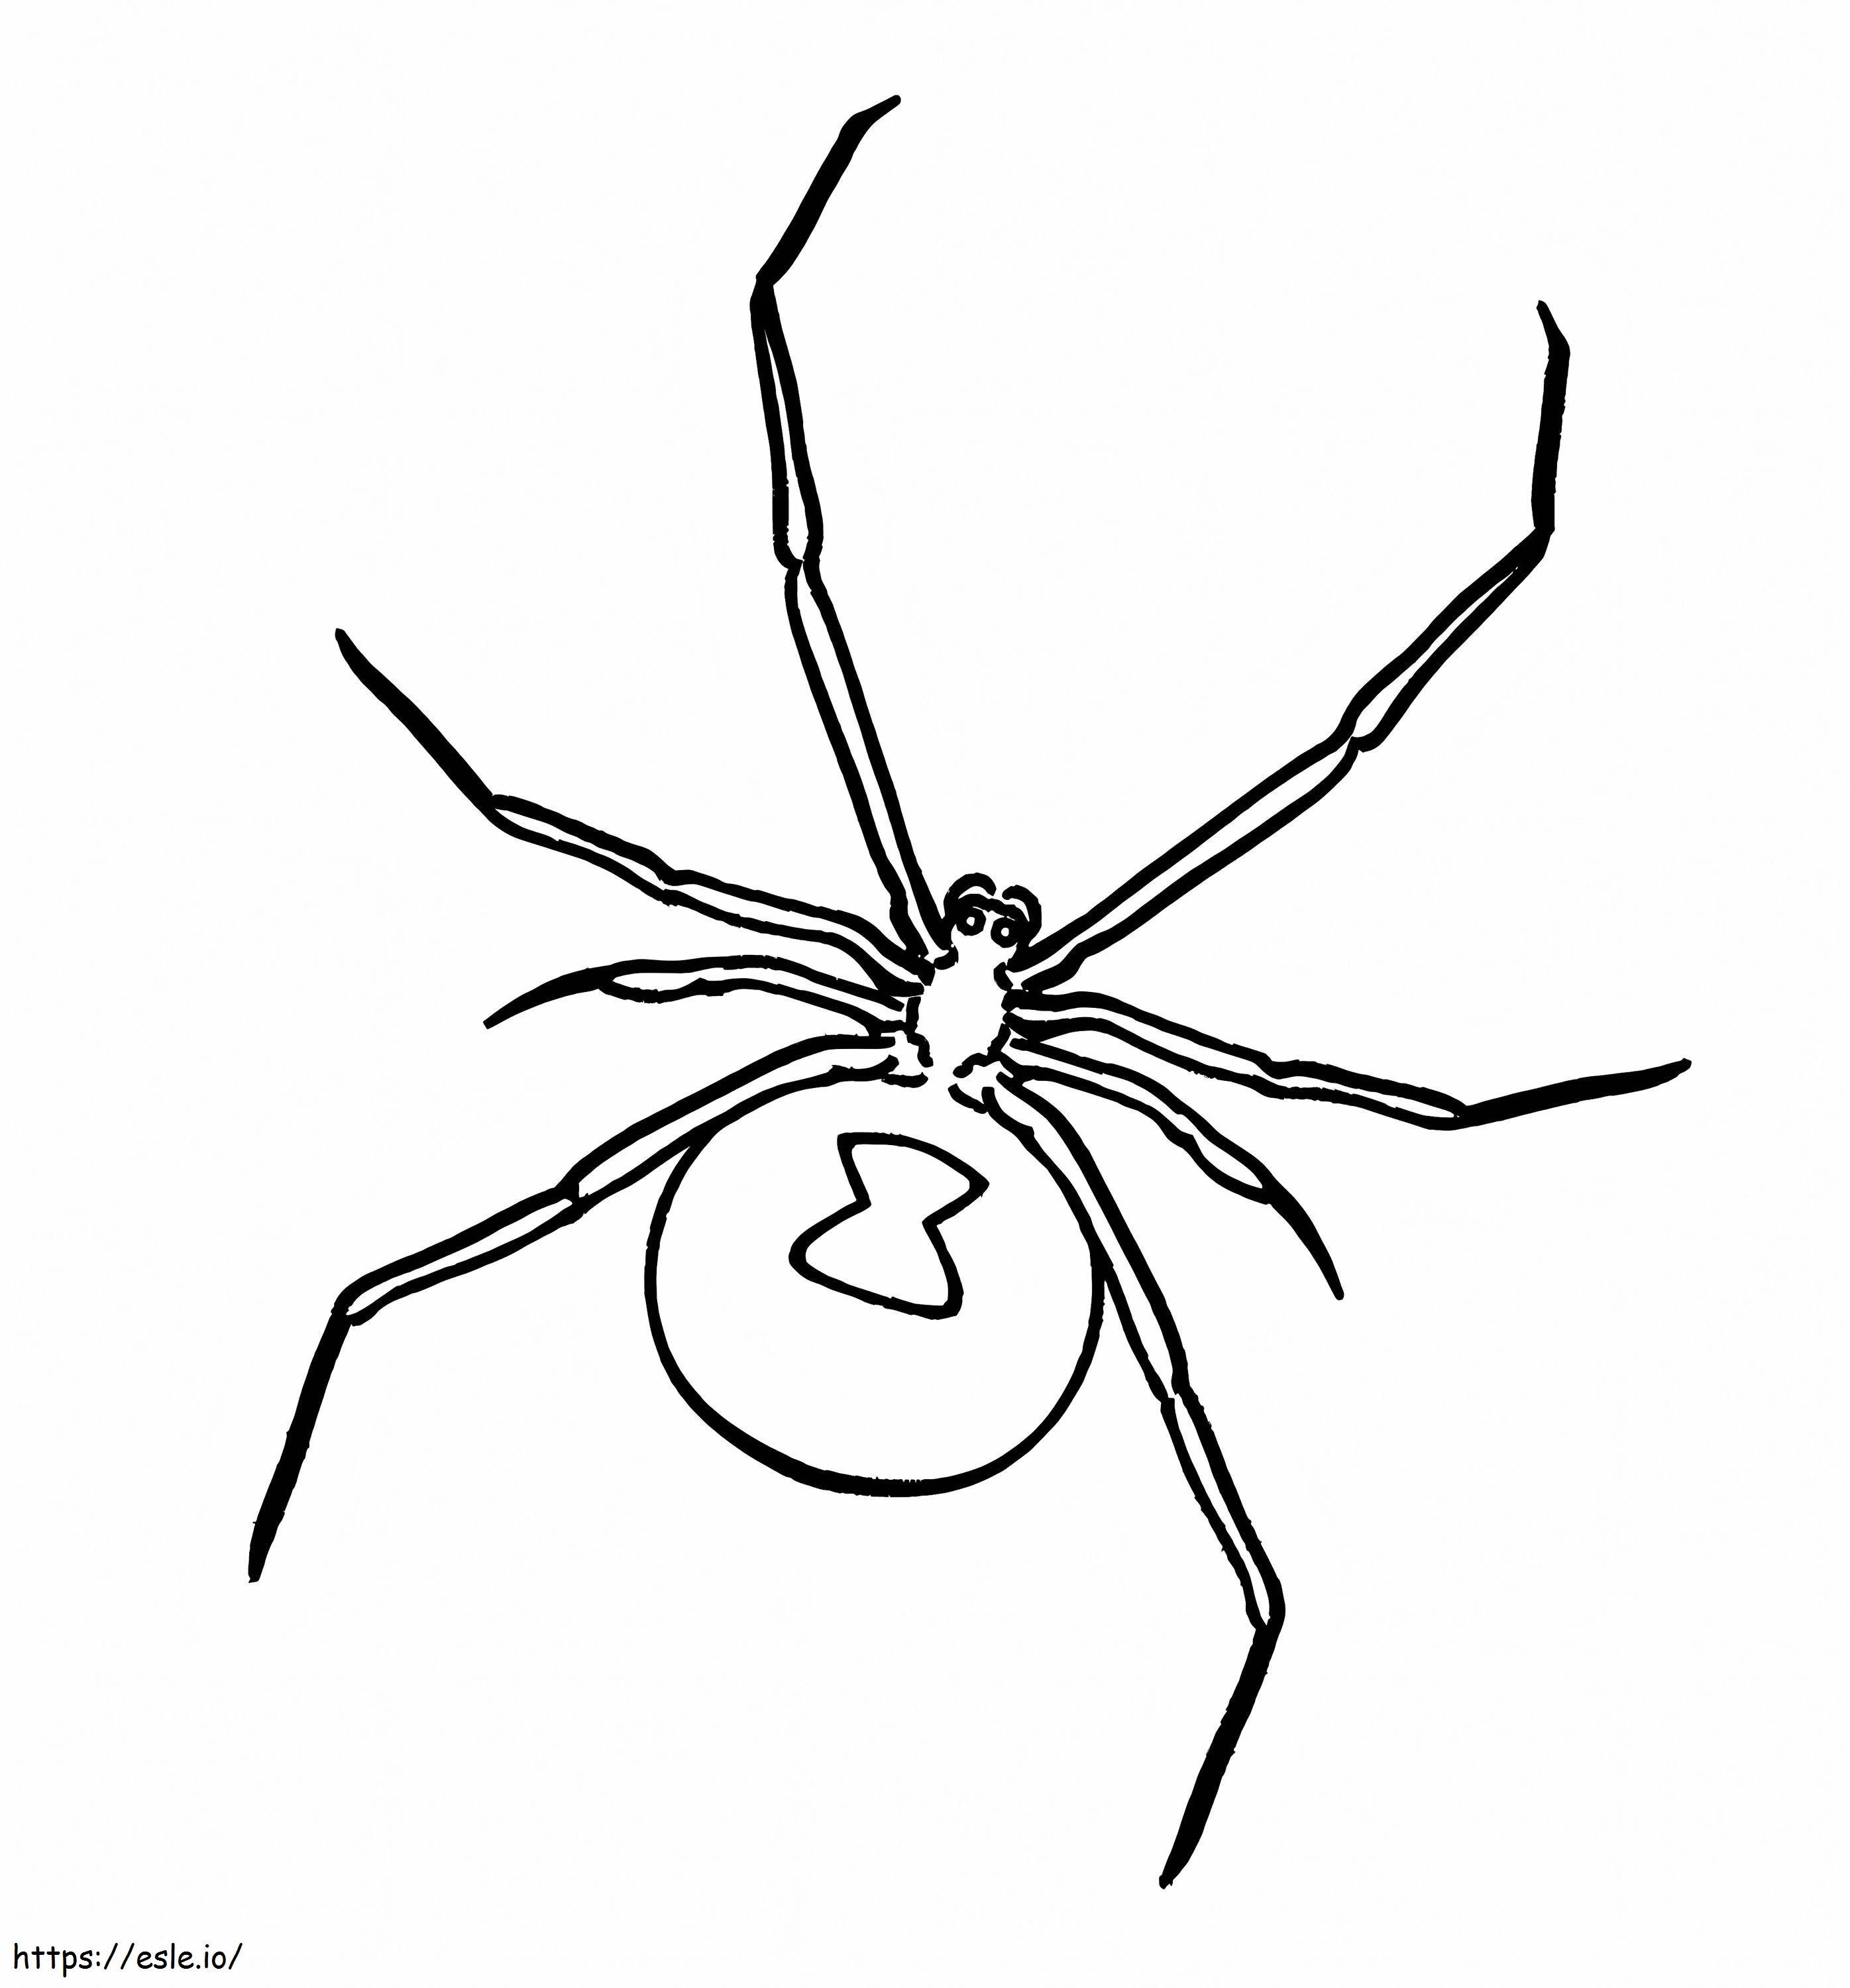 Păianjenul S-a Întors de colorat